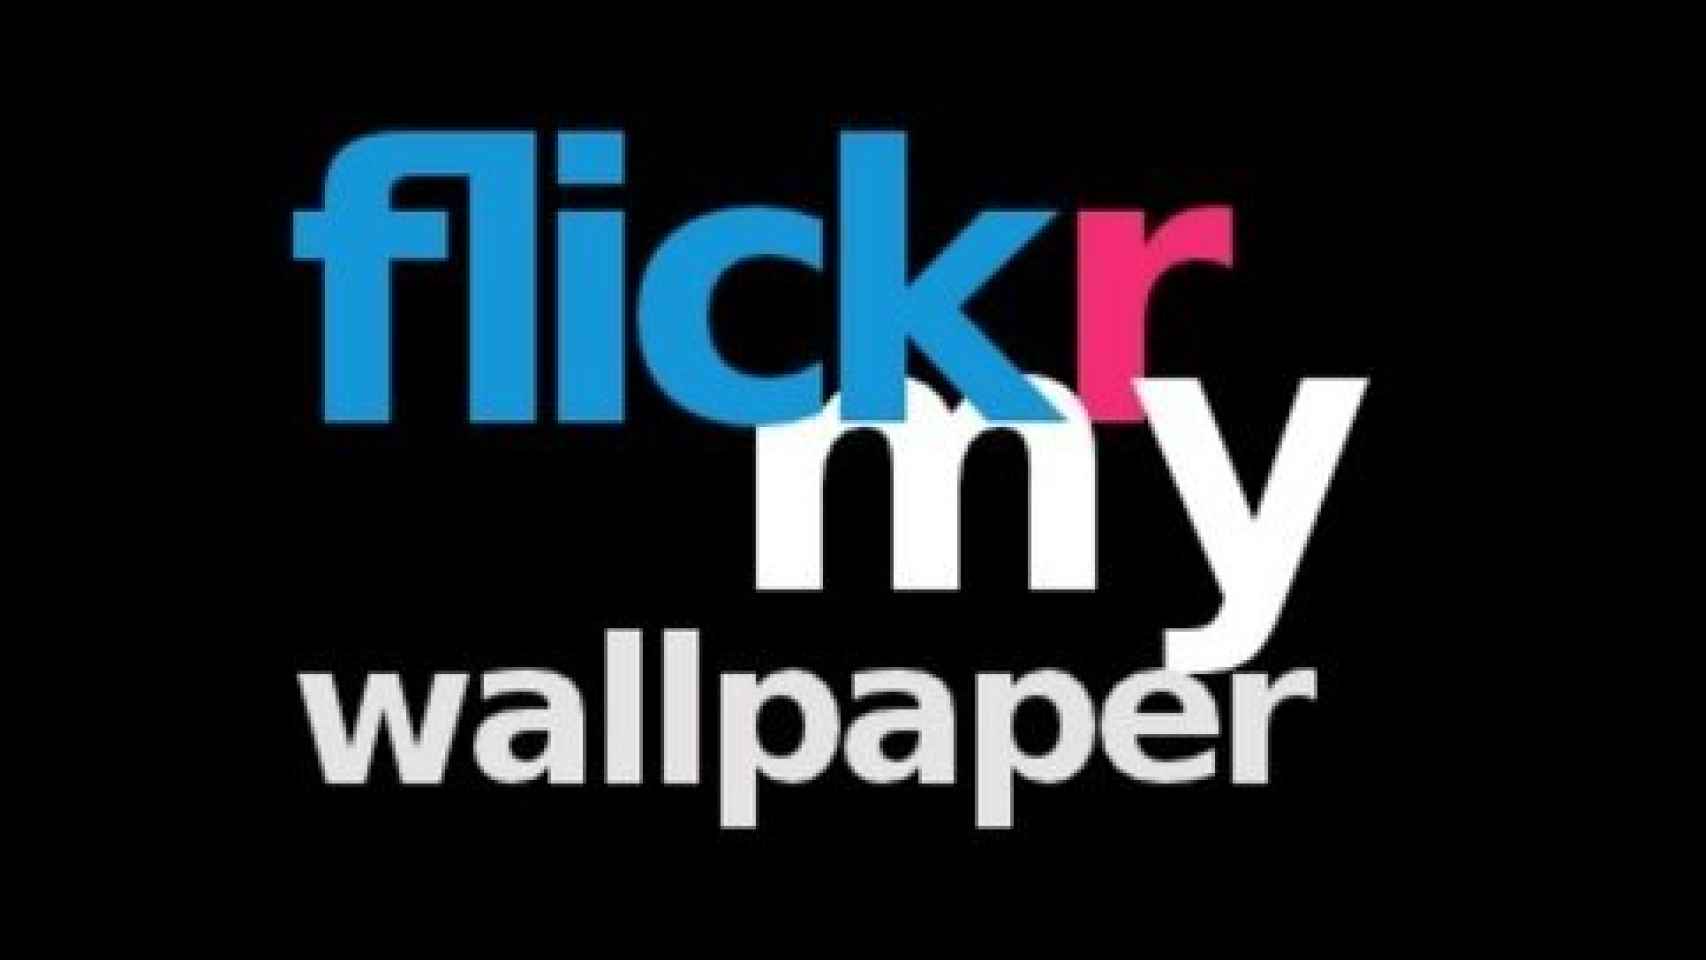 Cambia el fondo de pantalla automáticamente de tu Android con Flickr my Wallpaper